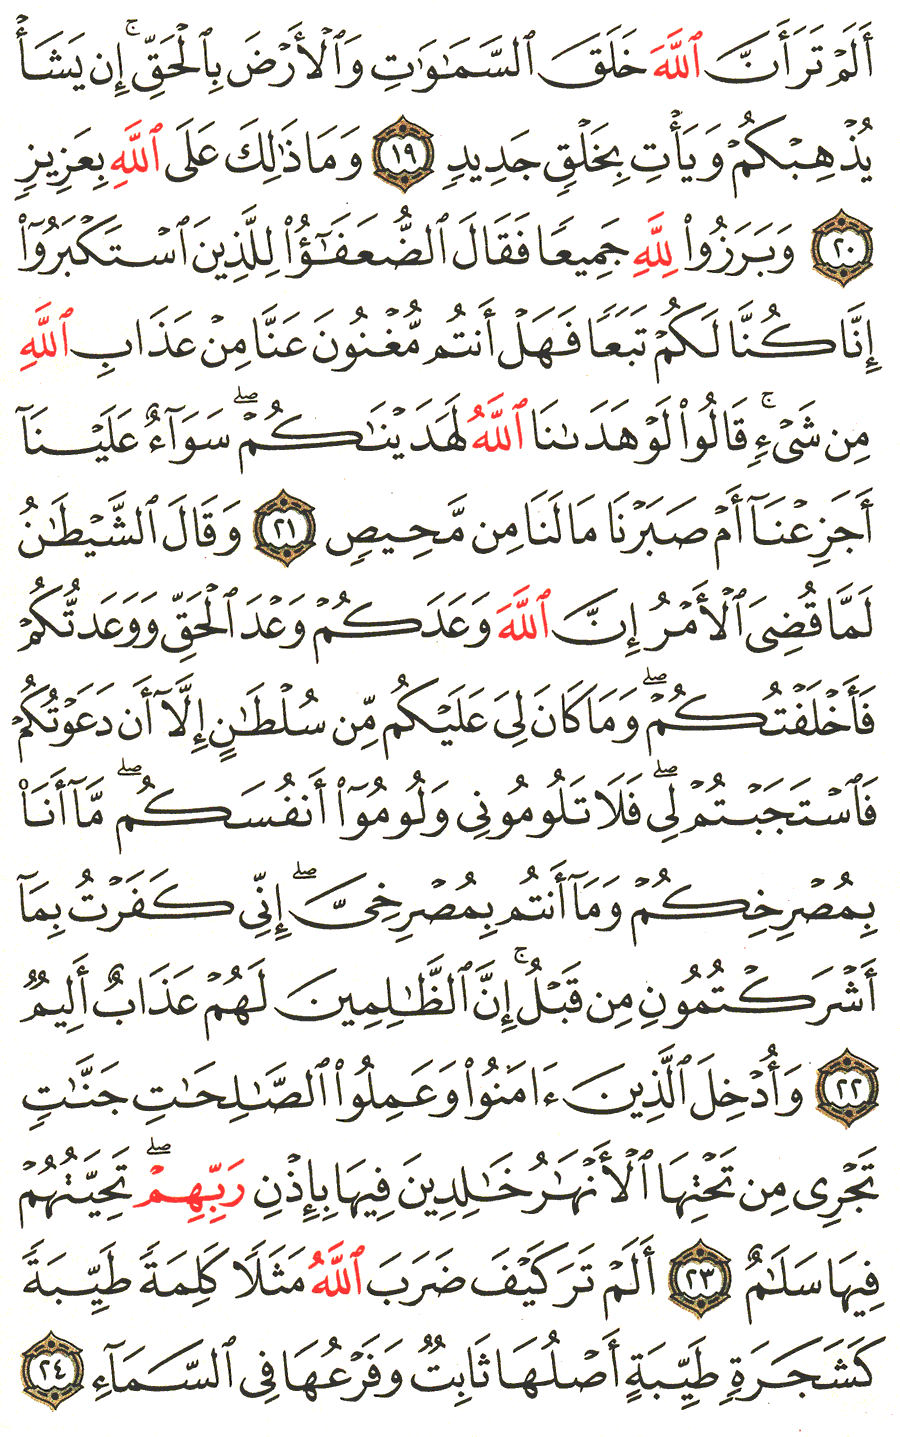 الصفحة 258 من القرآن الكريم